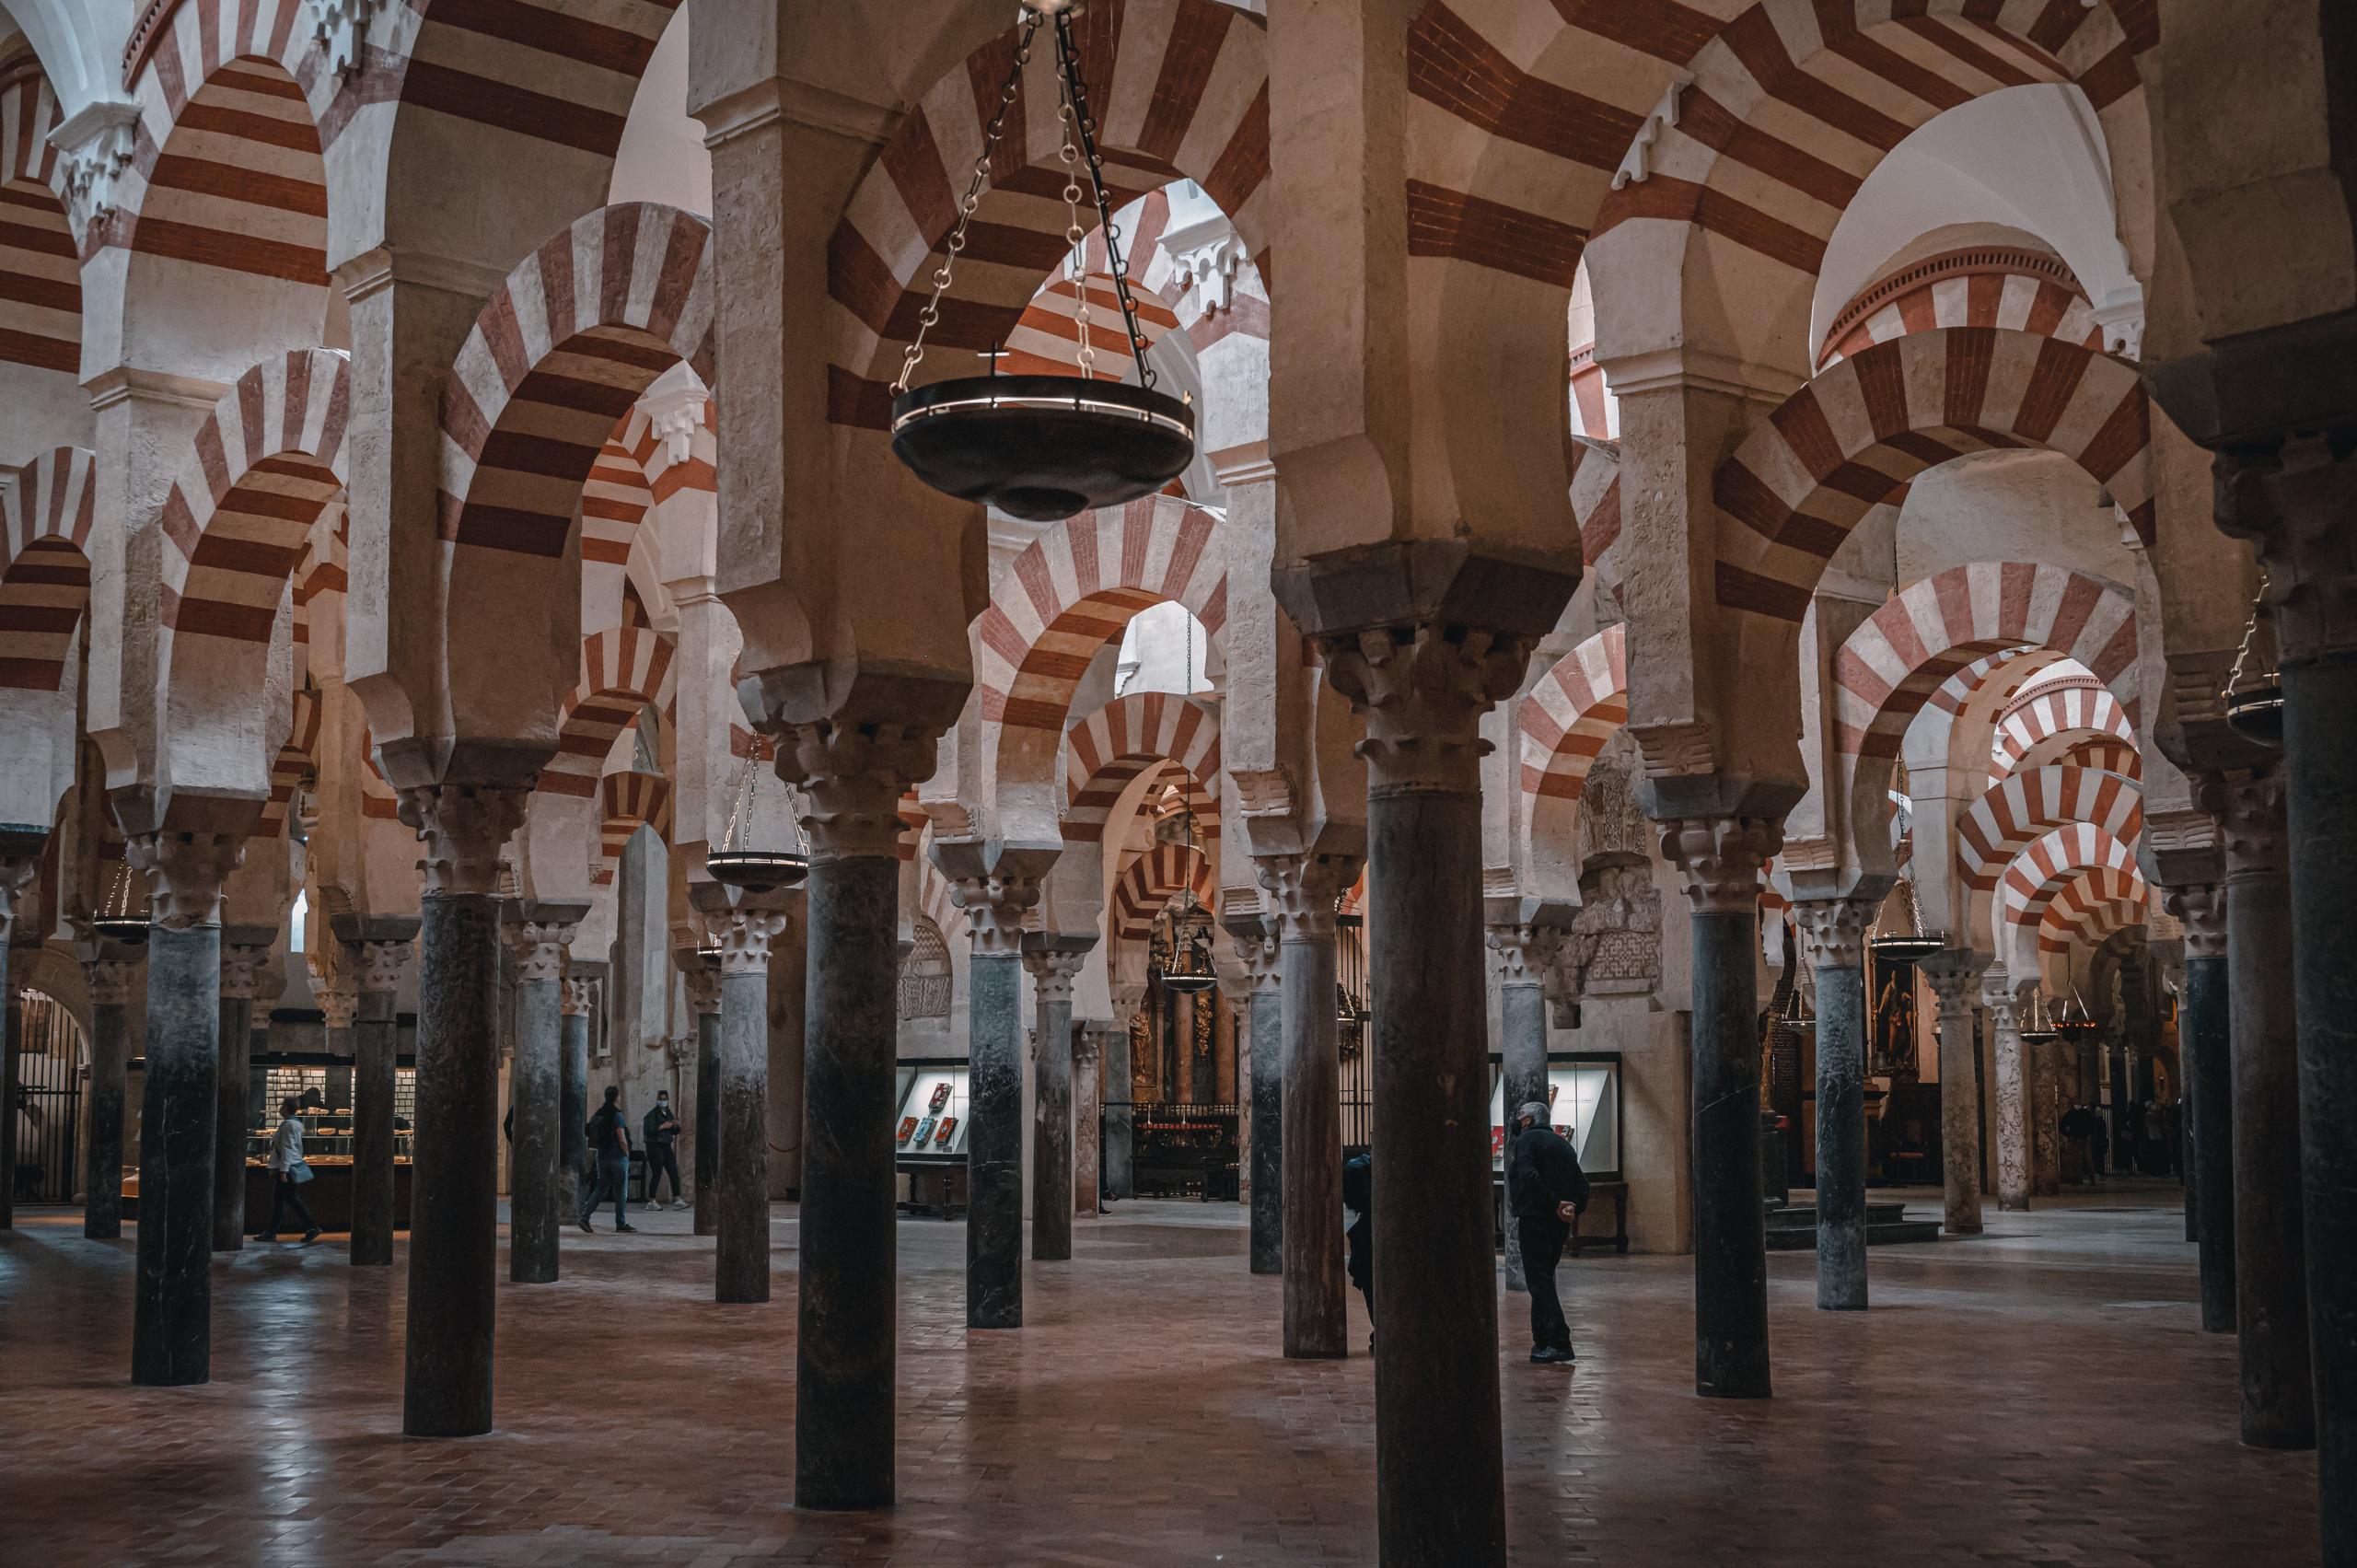 The flourishing of Spain under Muslim rule